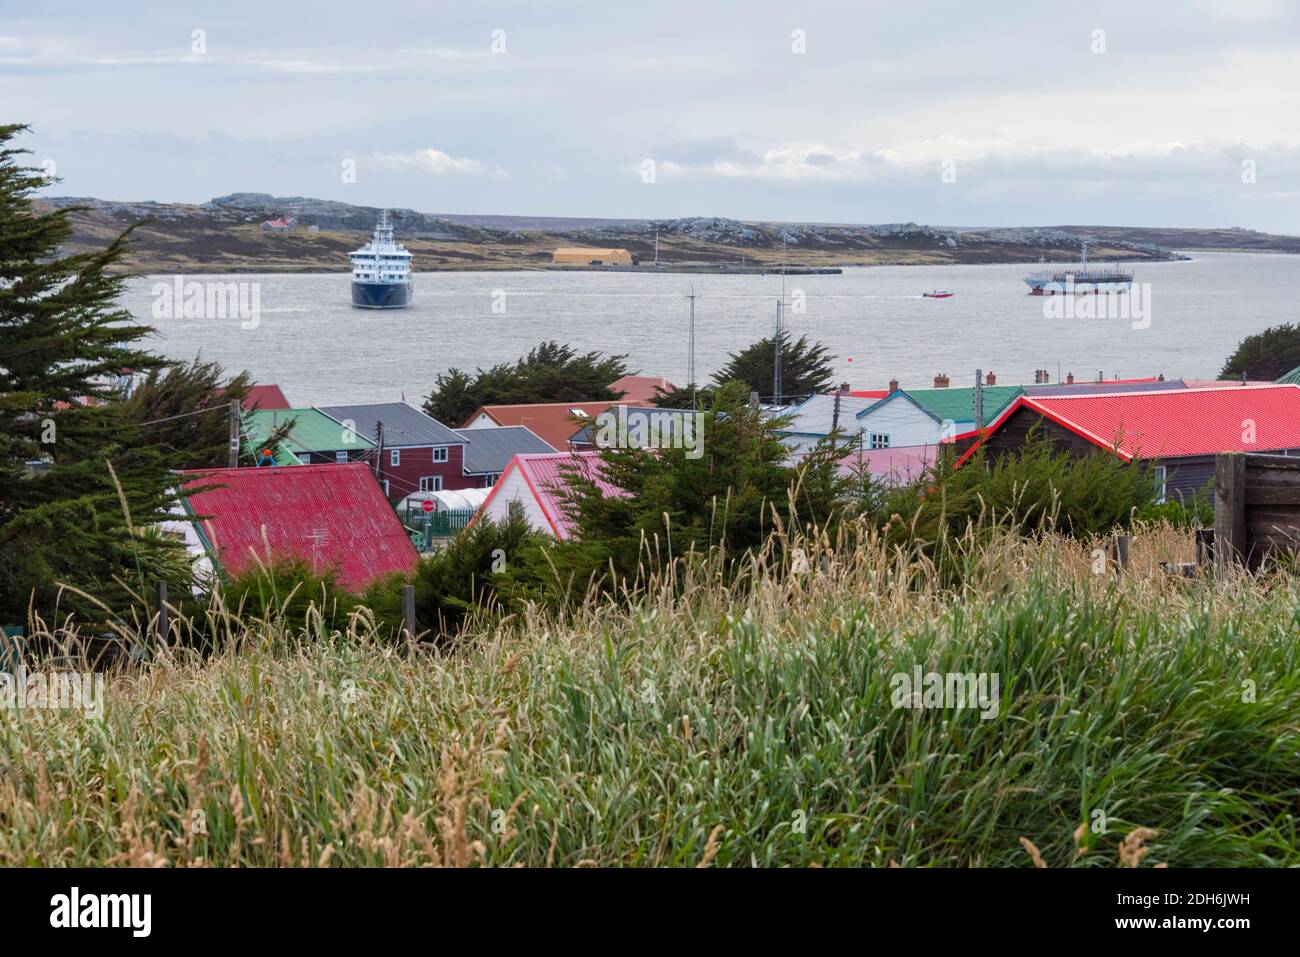 Maisons sur la plage, Port Stanley, îles Falkland Banque D'Images